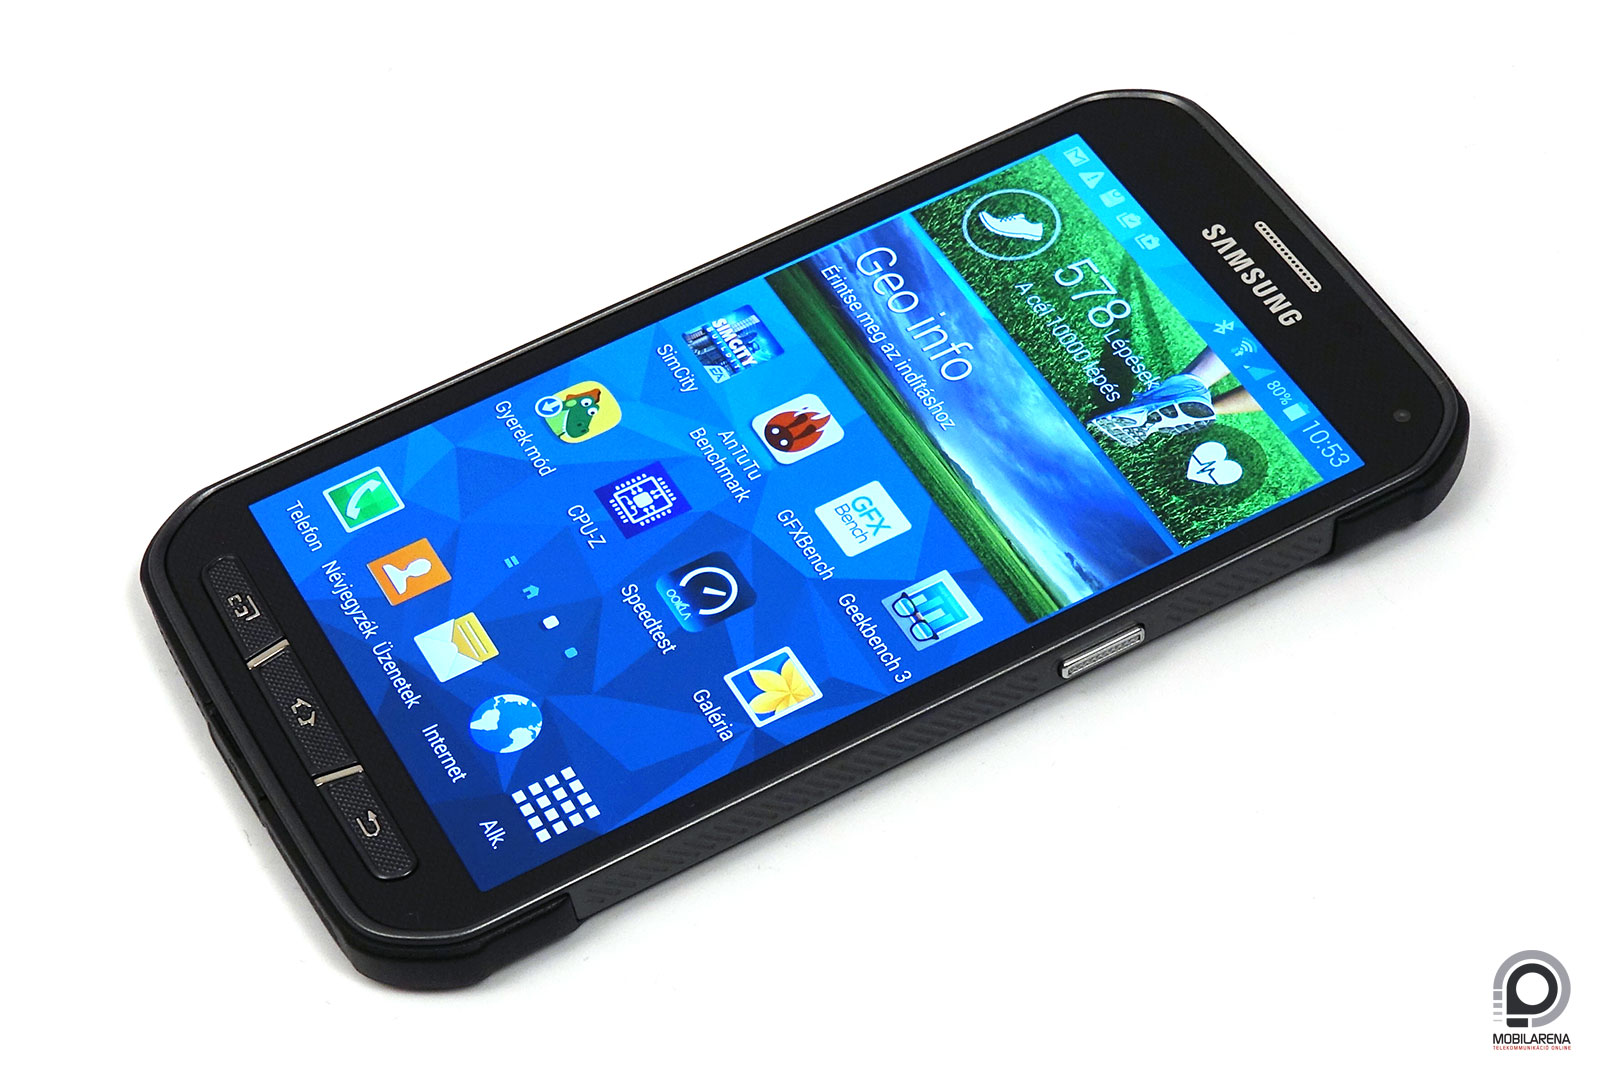 Samsung VS iPhone: Melyiket szereted jobban?